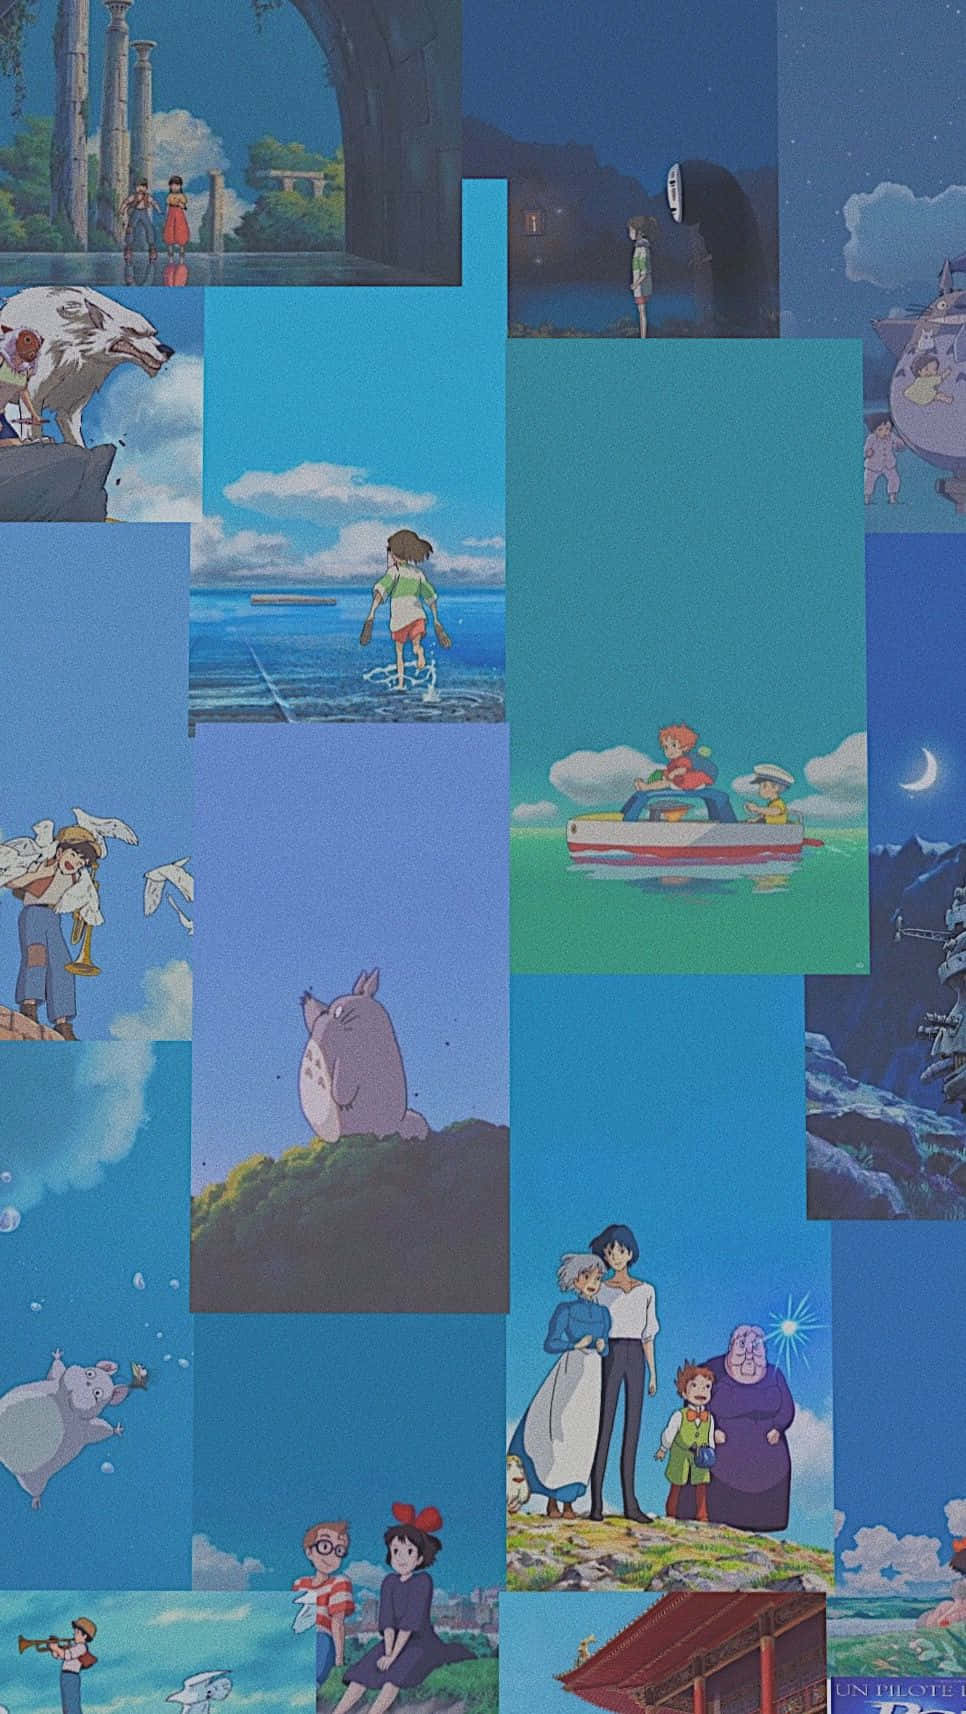 Tag på en rejse gennem det drømmende Aesthetic Ghibli univers. Wallpaper